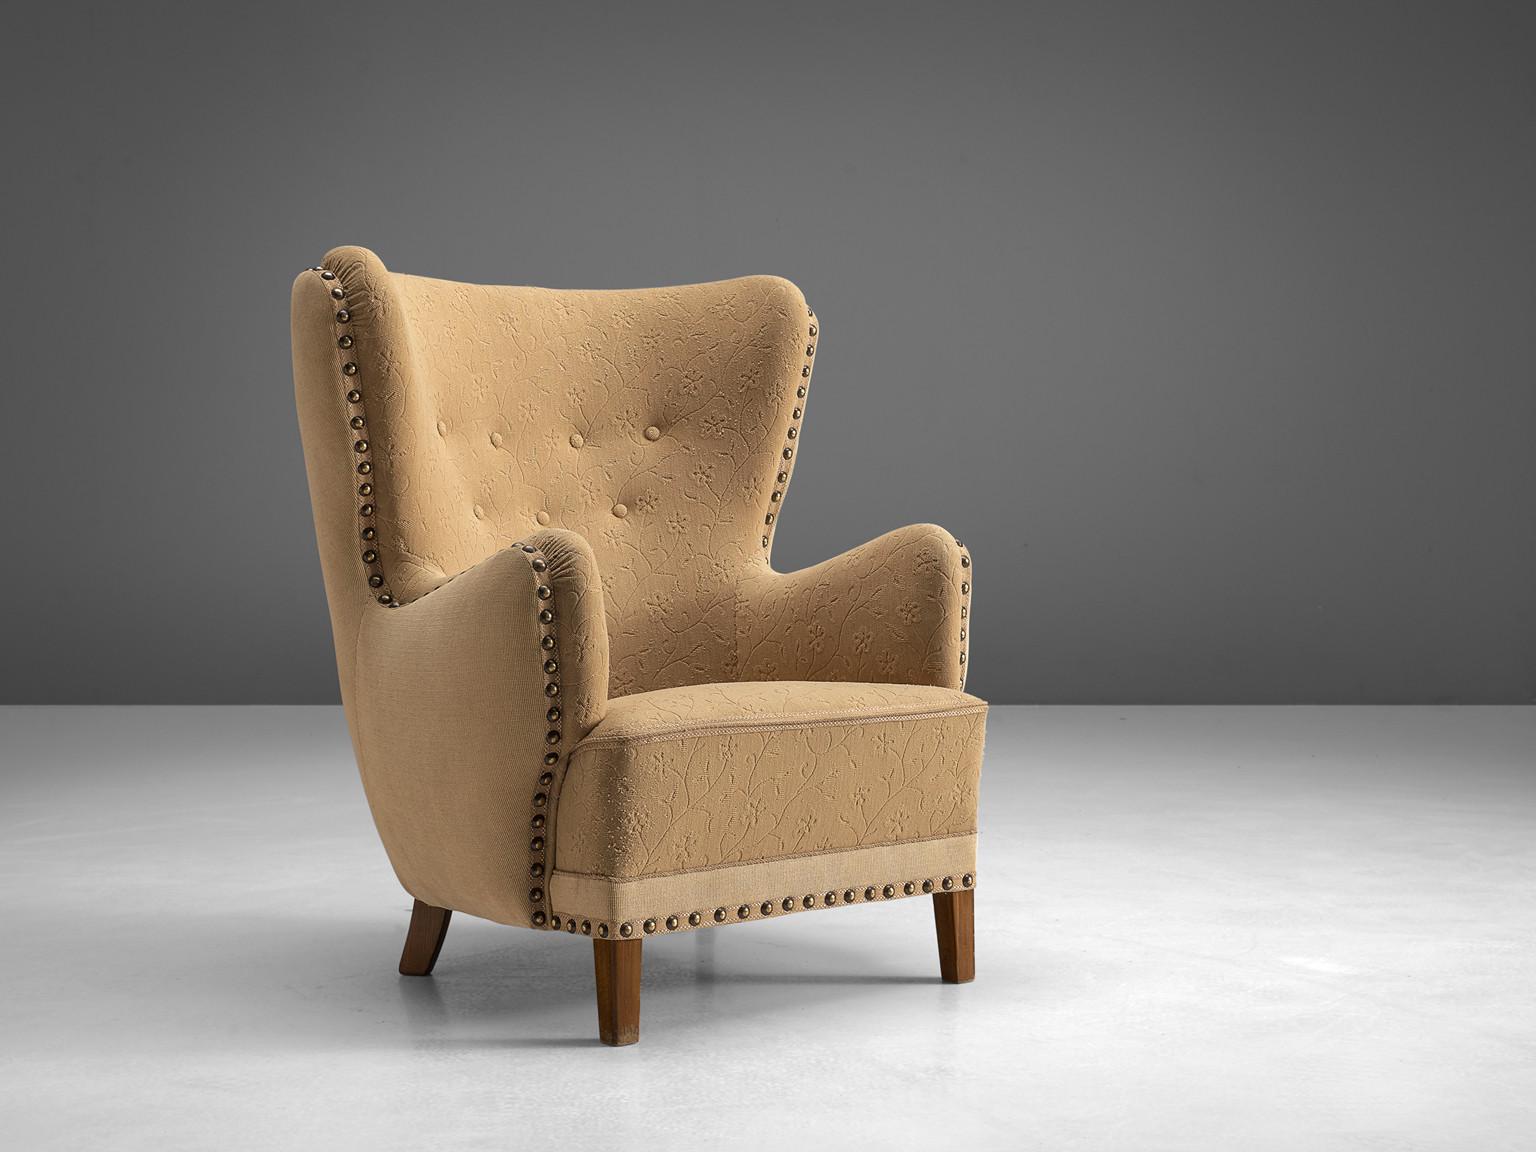 Chaise longue, hêtre teinté, tissu beige, Danemark, années 1950

Cet archétype de la chaise à oreilles des années 1950 est à la fois extrêmement confortable et agréable à regarder. Ce fauteuil facile aux pieds en hêtre teinté présente une aile